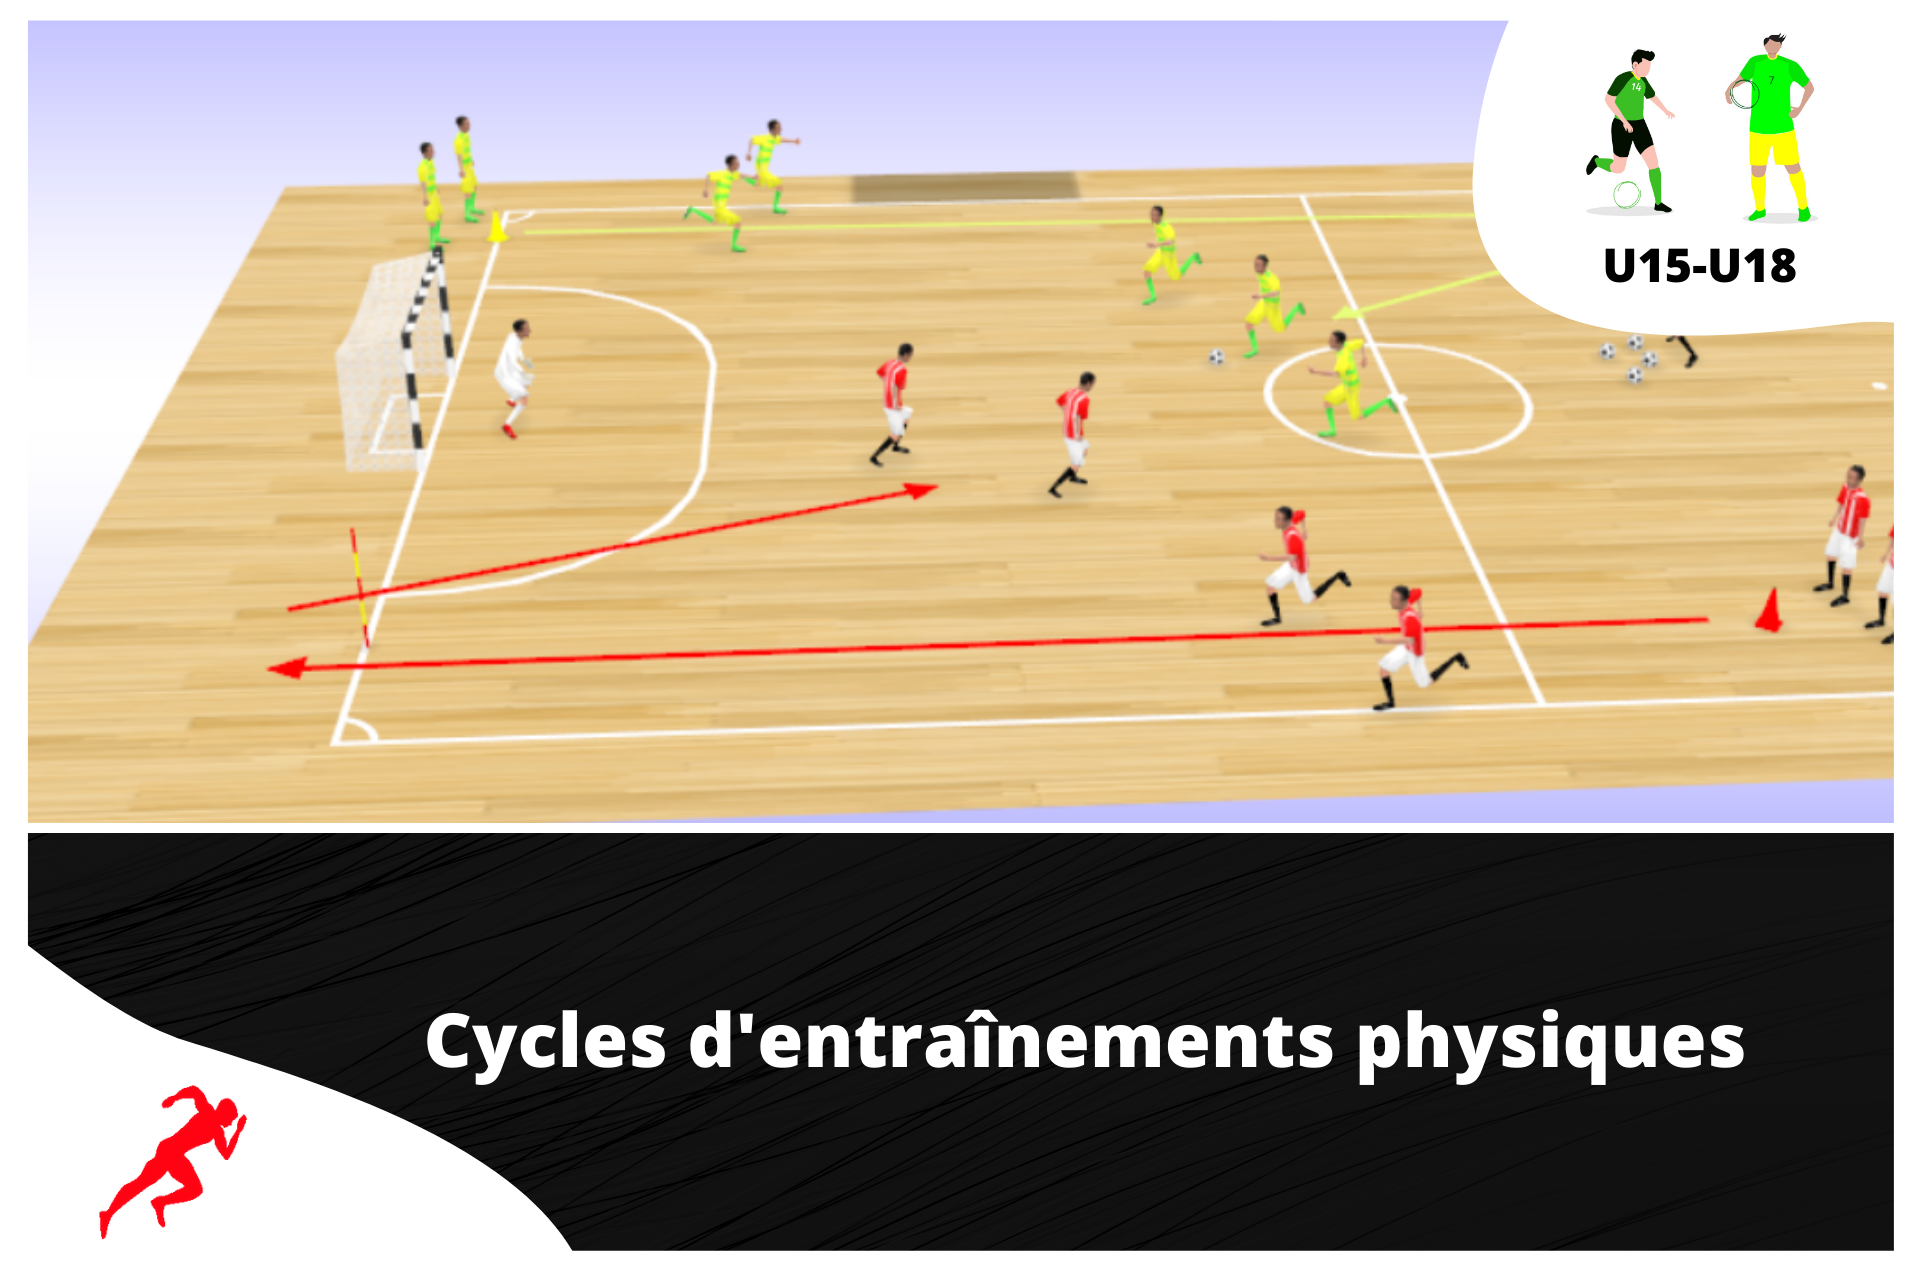 2 cycles d'entraînements physiques en futsal spécial "vitesse" U14 - U18 - preparationphysiquefootball-shop.com